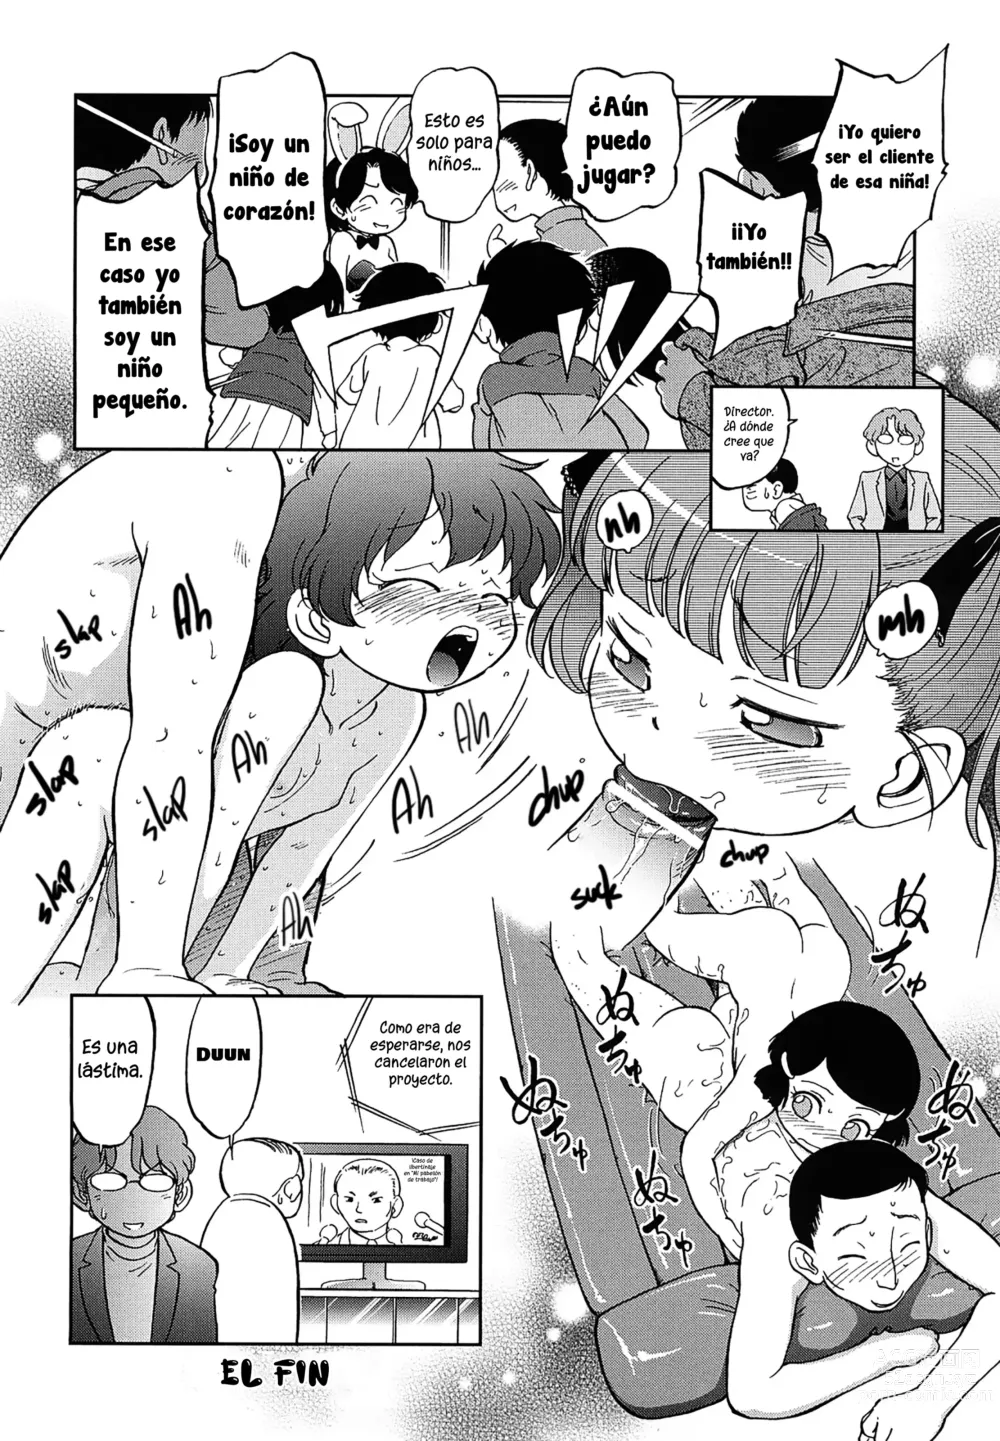 Page 16 of manga Niños trabajando